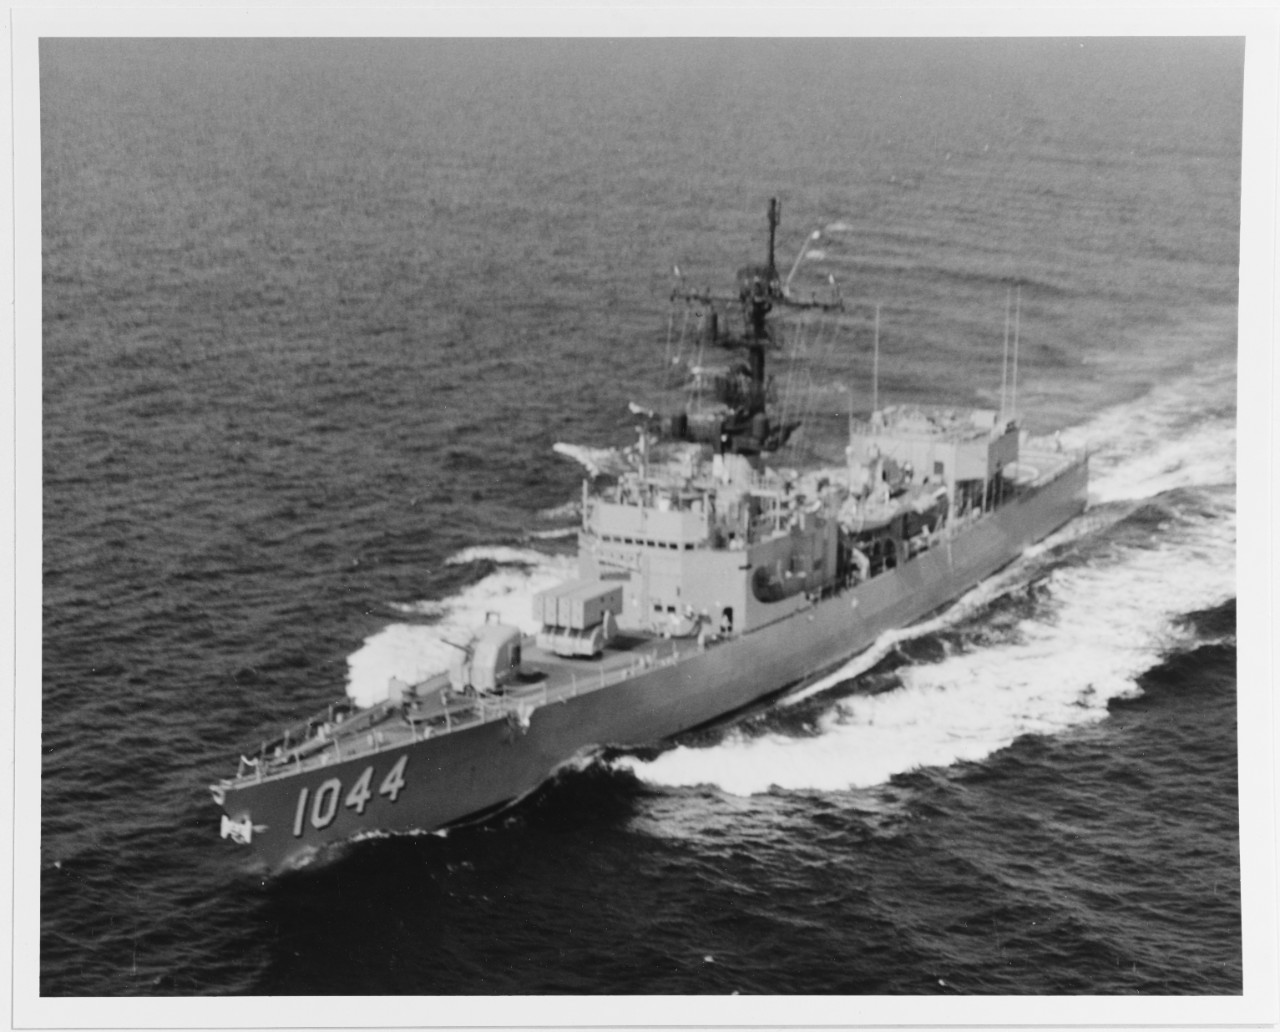 USS BRUMBY (DE-1044)